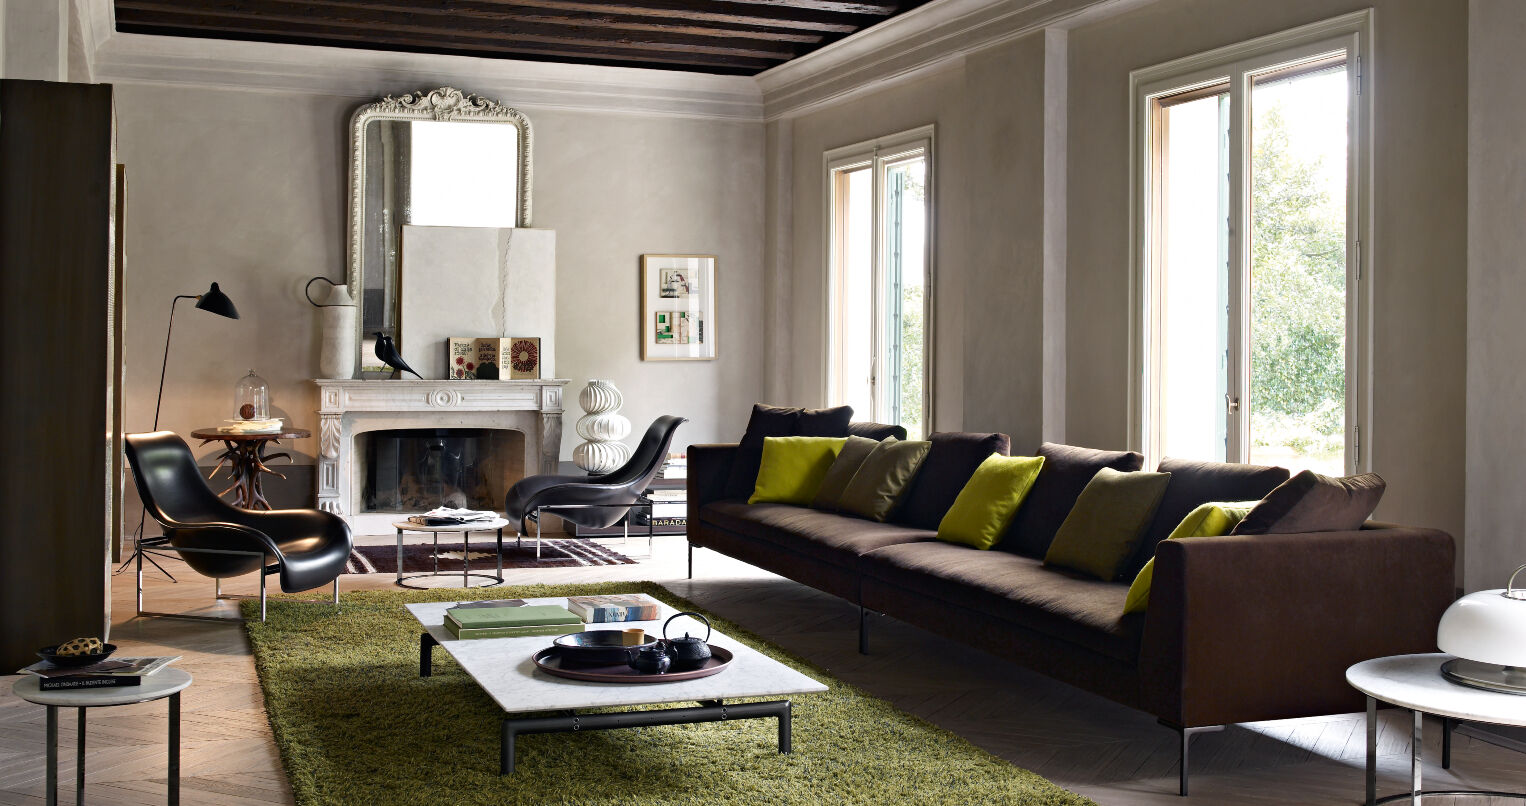 B&B Italia living room showing Charles sofa